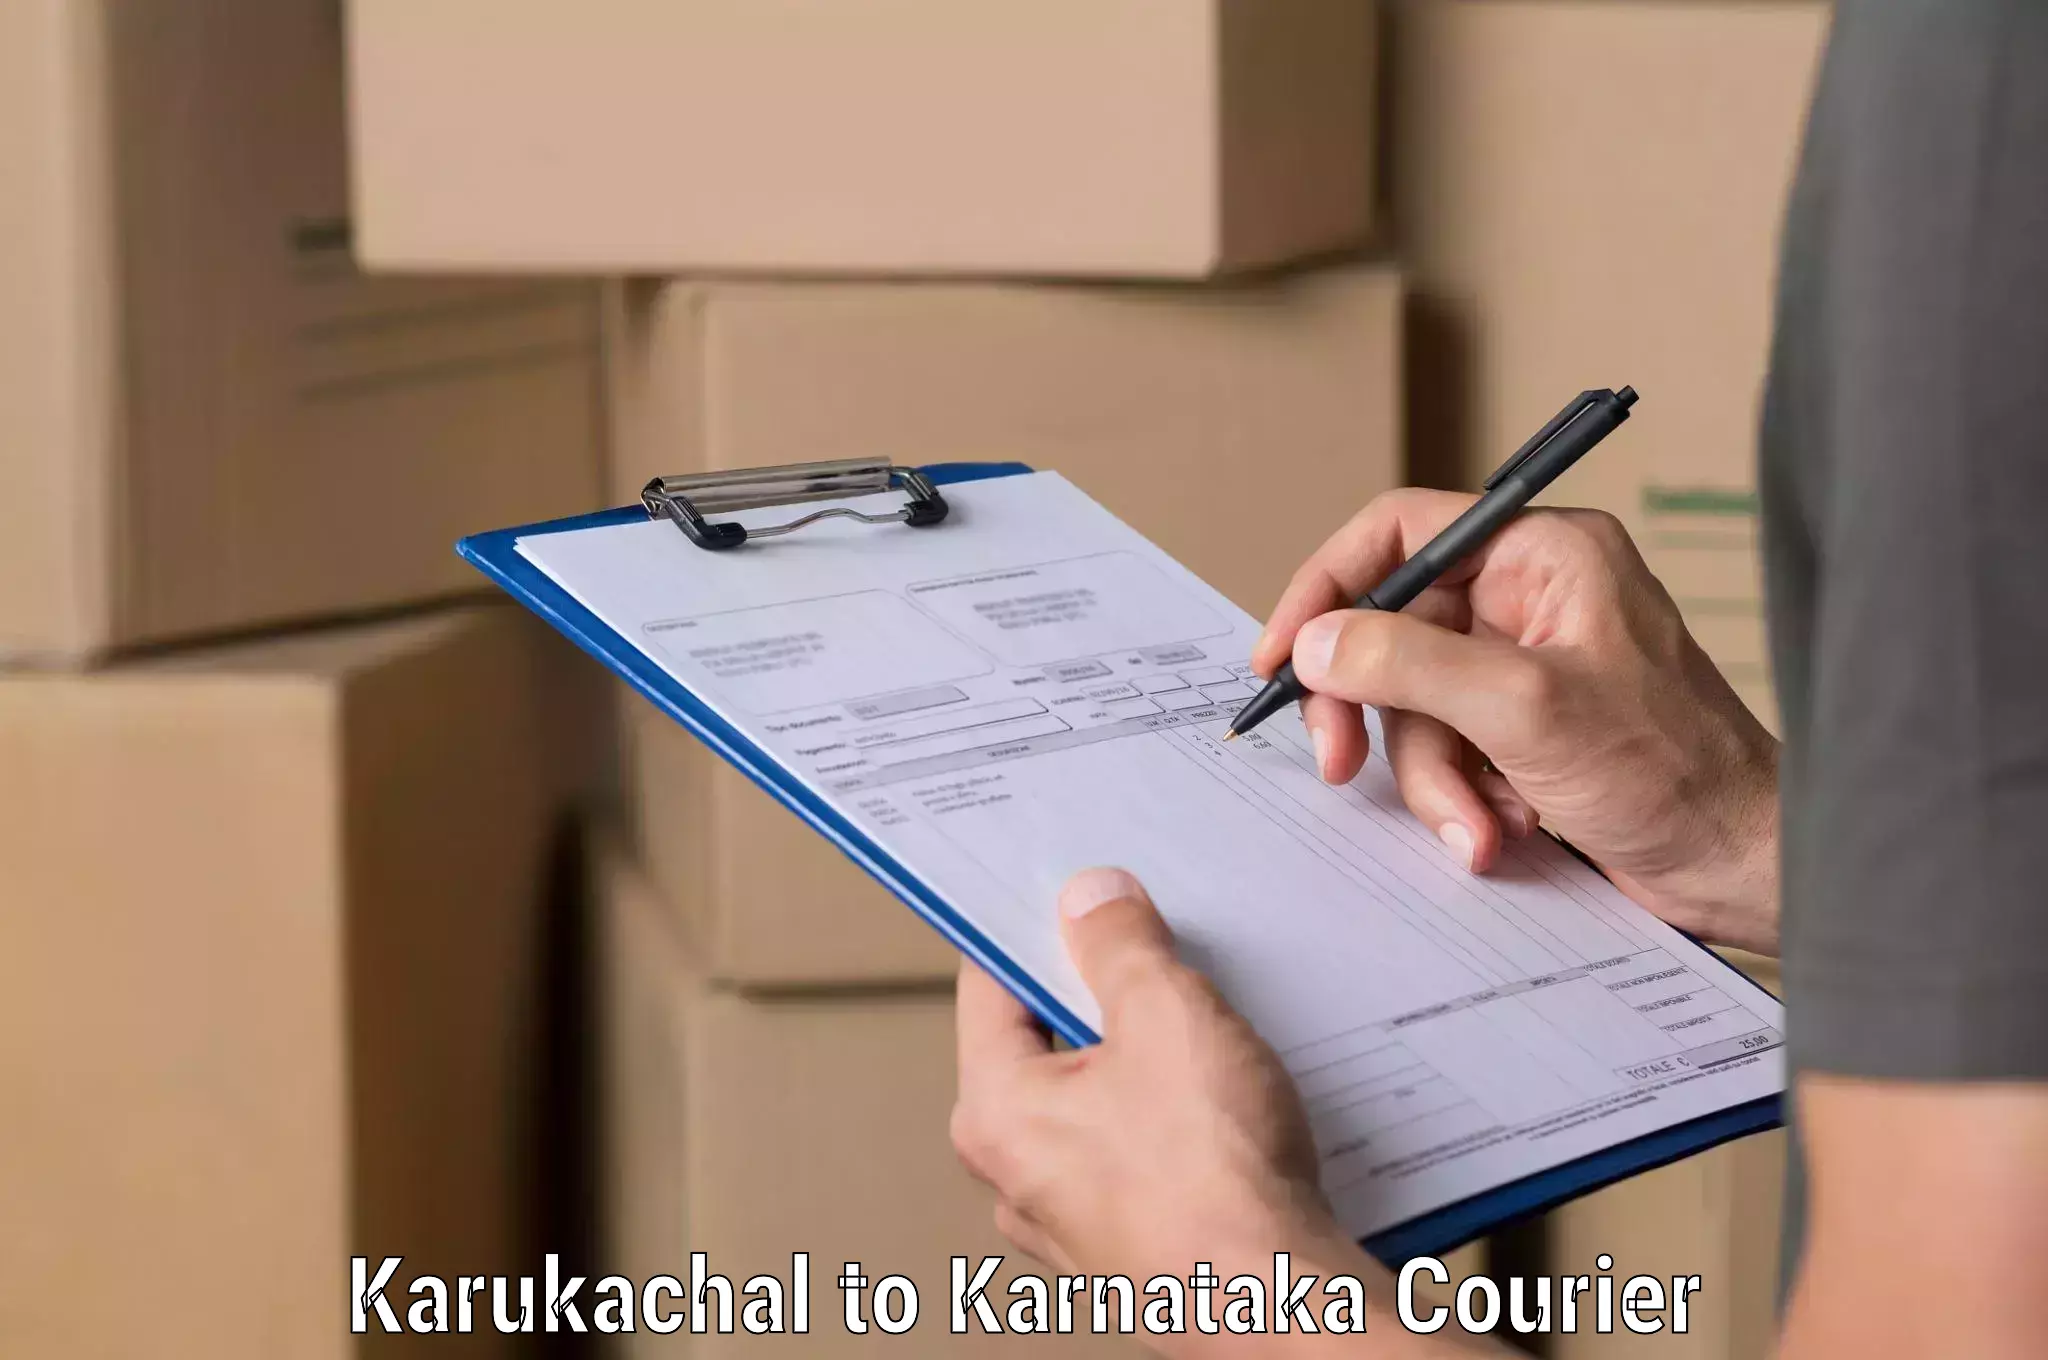 Global logistics network Karukachal to Bagaluru